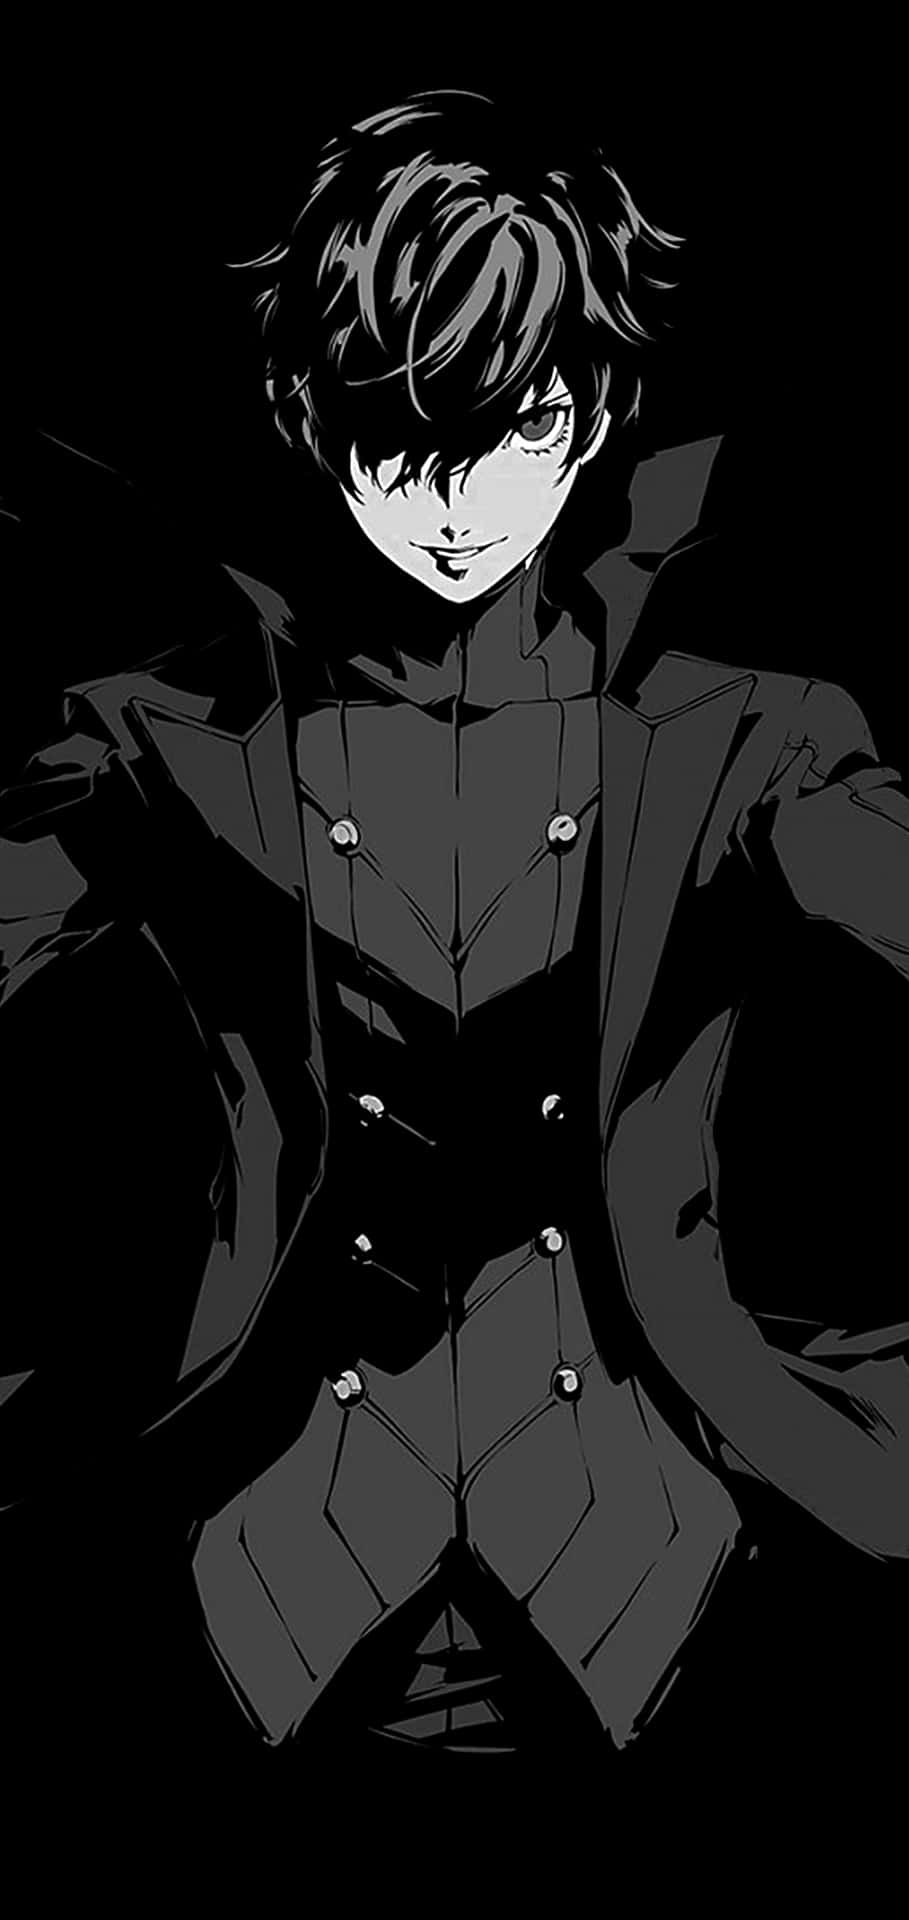 Unmisterioso Chico De Anime De Cabello Oscuro Con Un Aura Enigmática. Fondo de pantalla